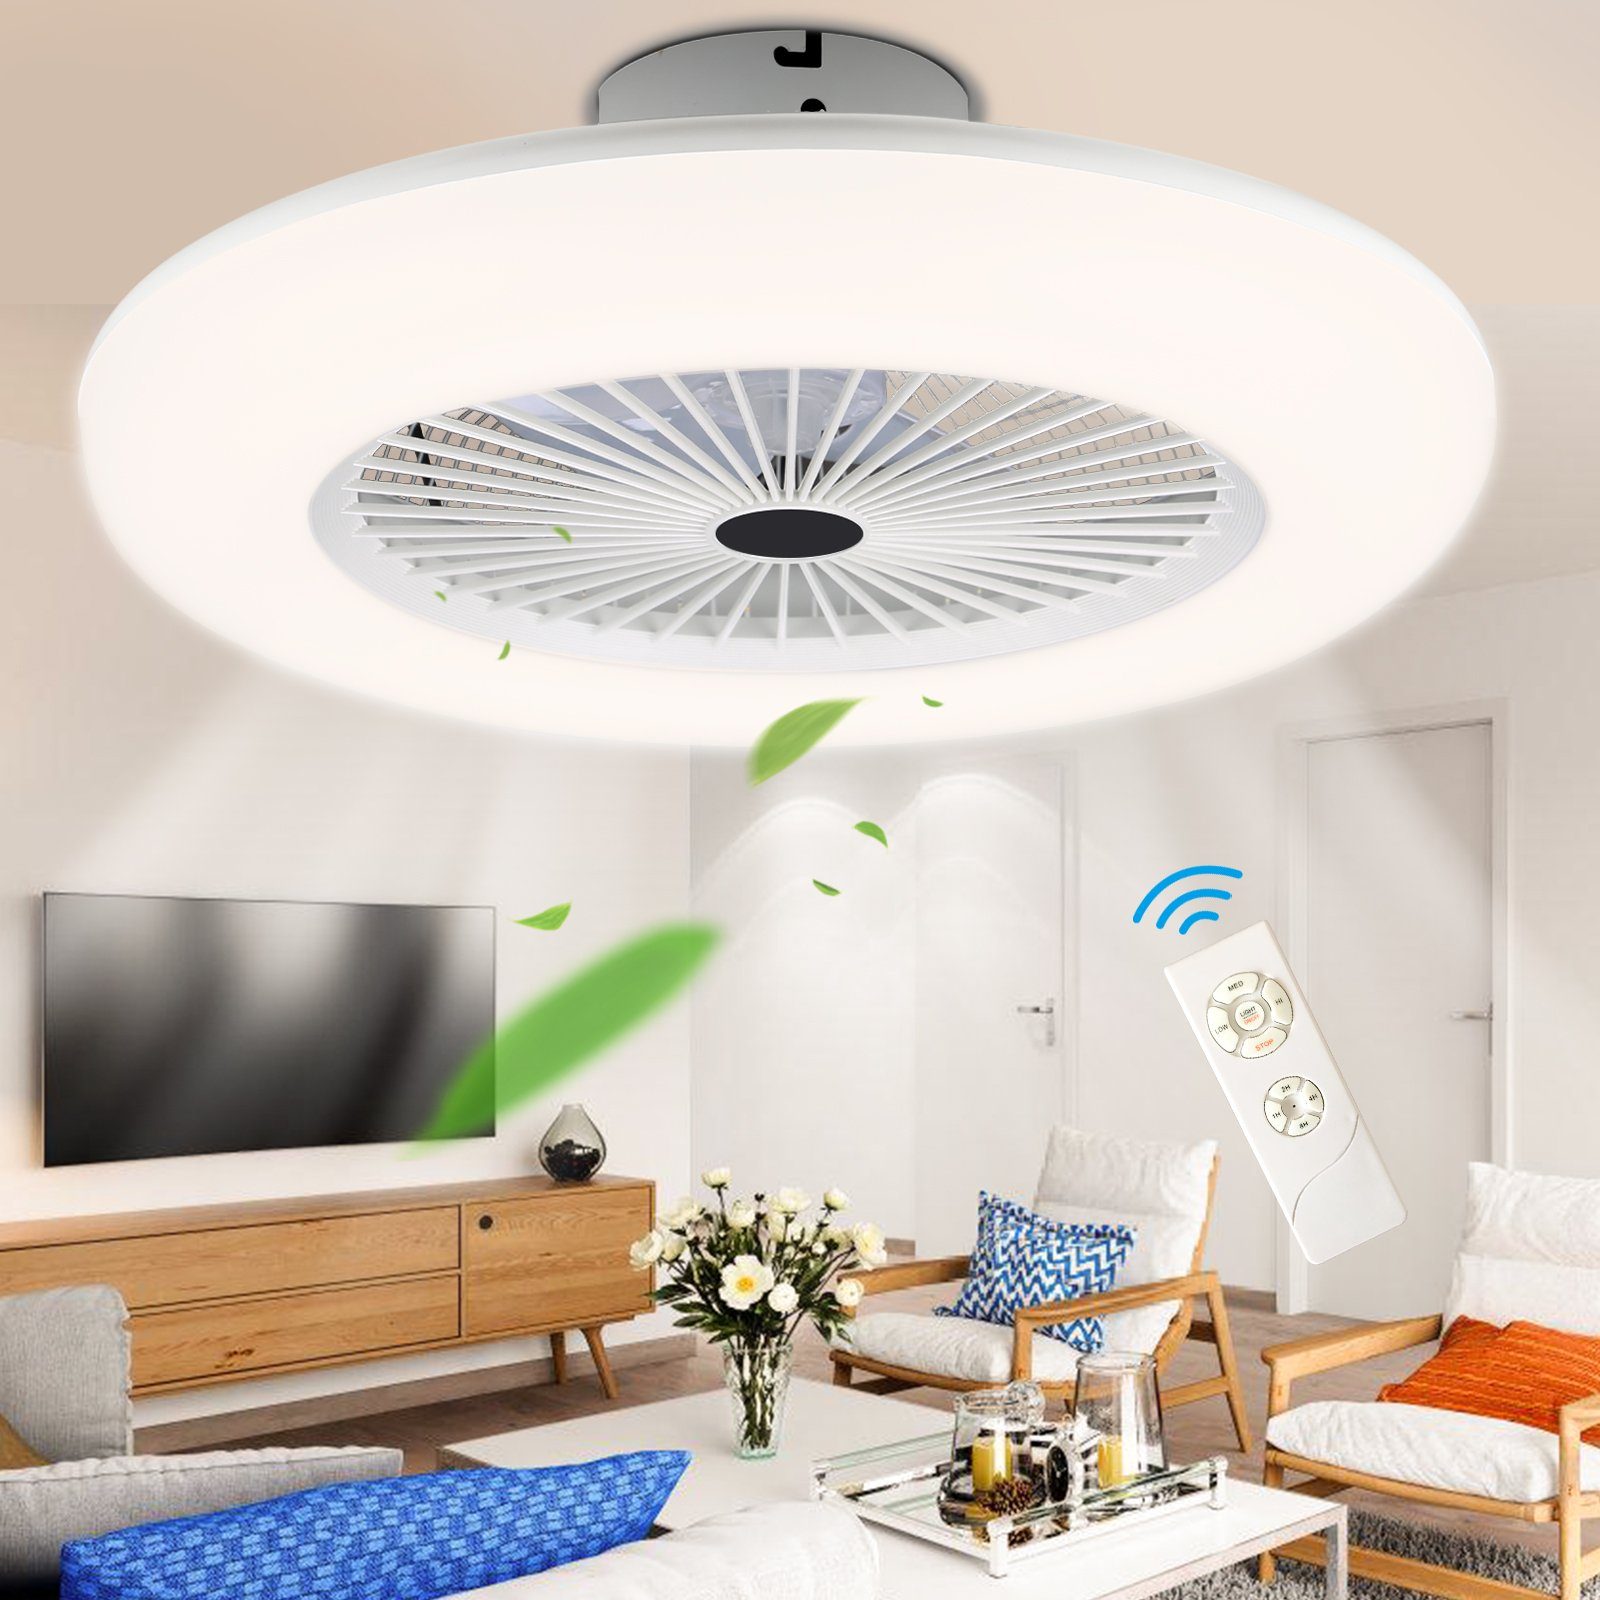 TolleTour Deckenventilator 80W Deckenventilator Lüfter Zimmer Kühler LED Leiser Wohn Ventilator, Mit Fernbedienung und Zeitmessung